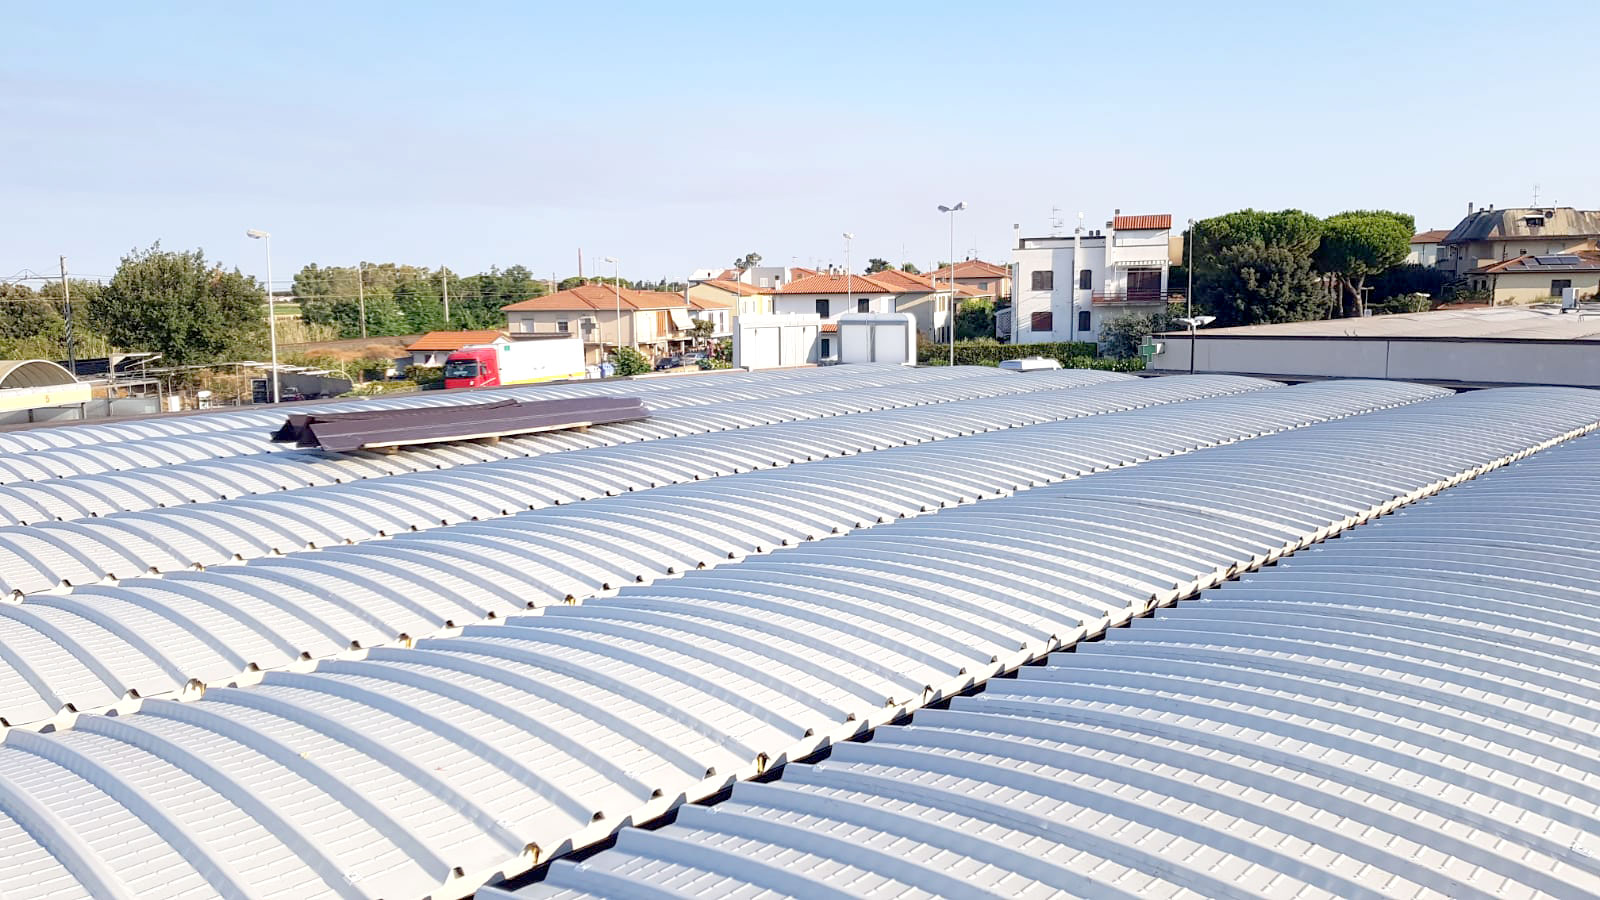 Rimozione lastre fibrocemento di copertura e rifacimento tetto, Cecina - Livorno - dopo l'intervento di Ecoteti srl